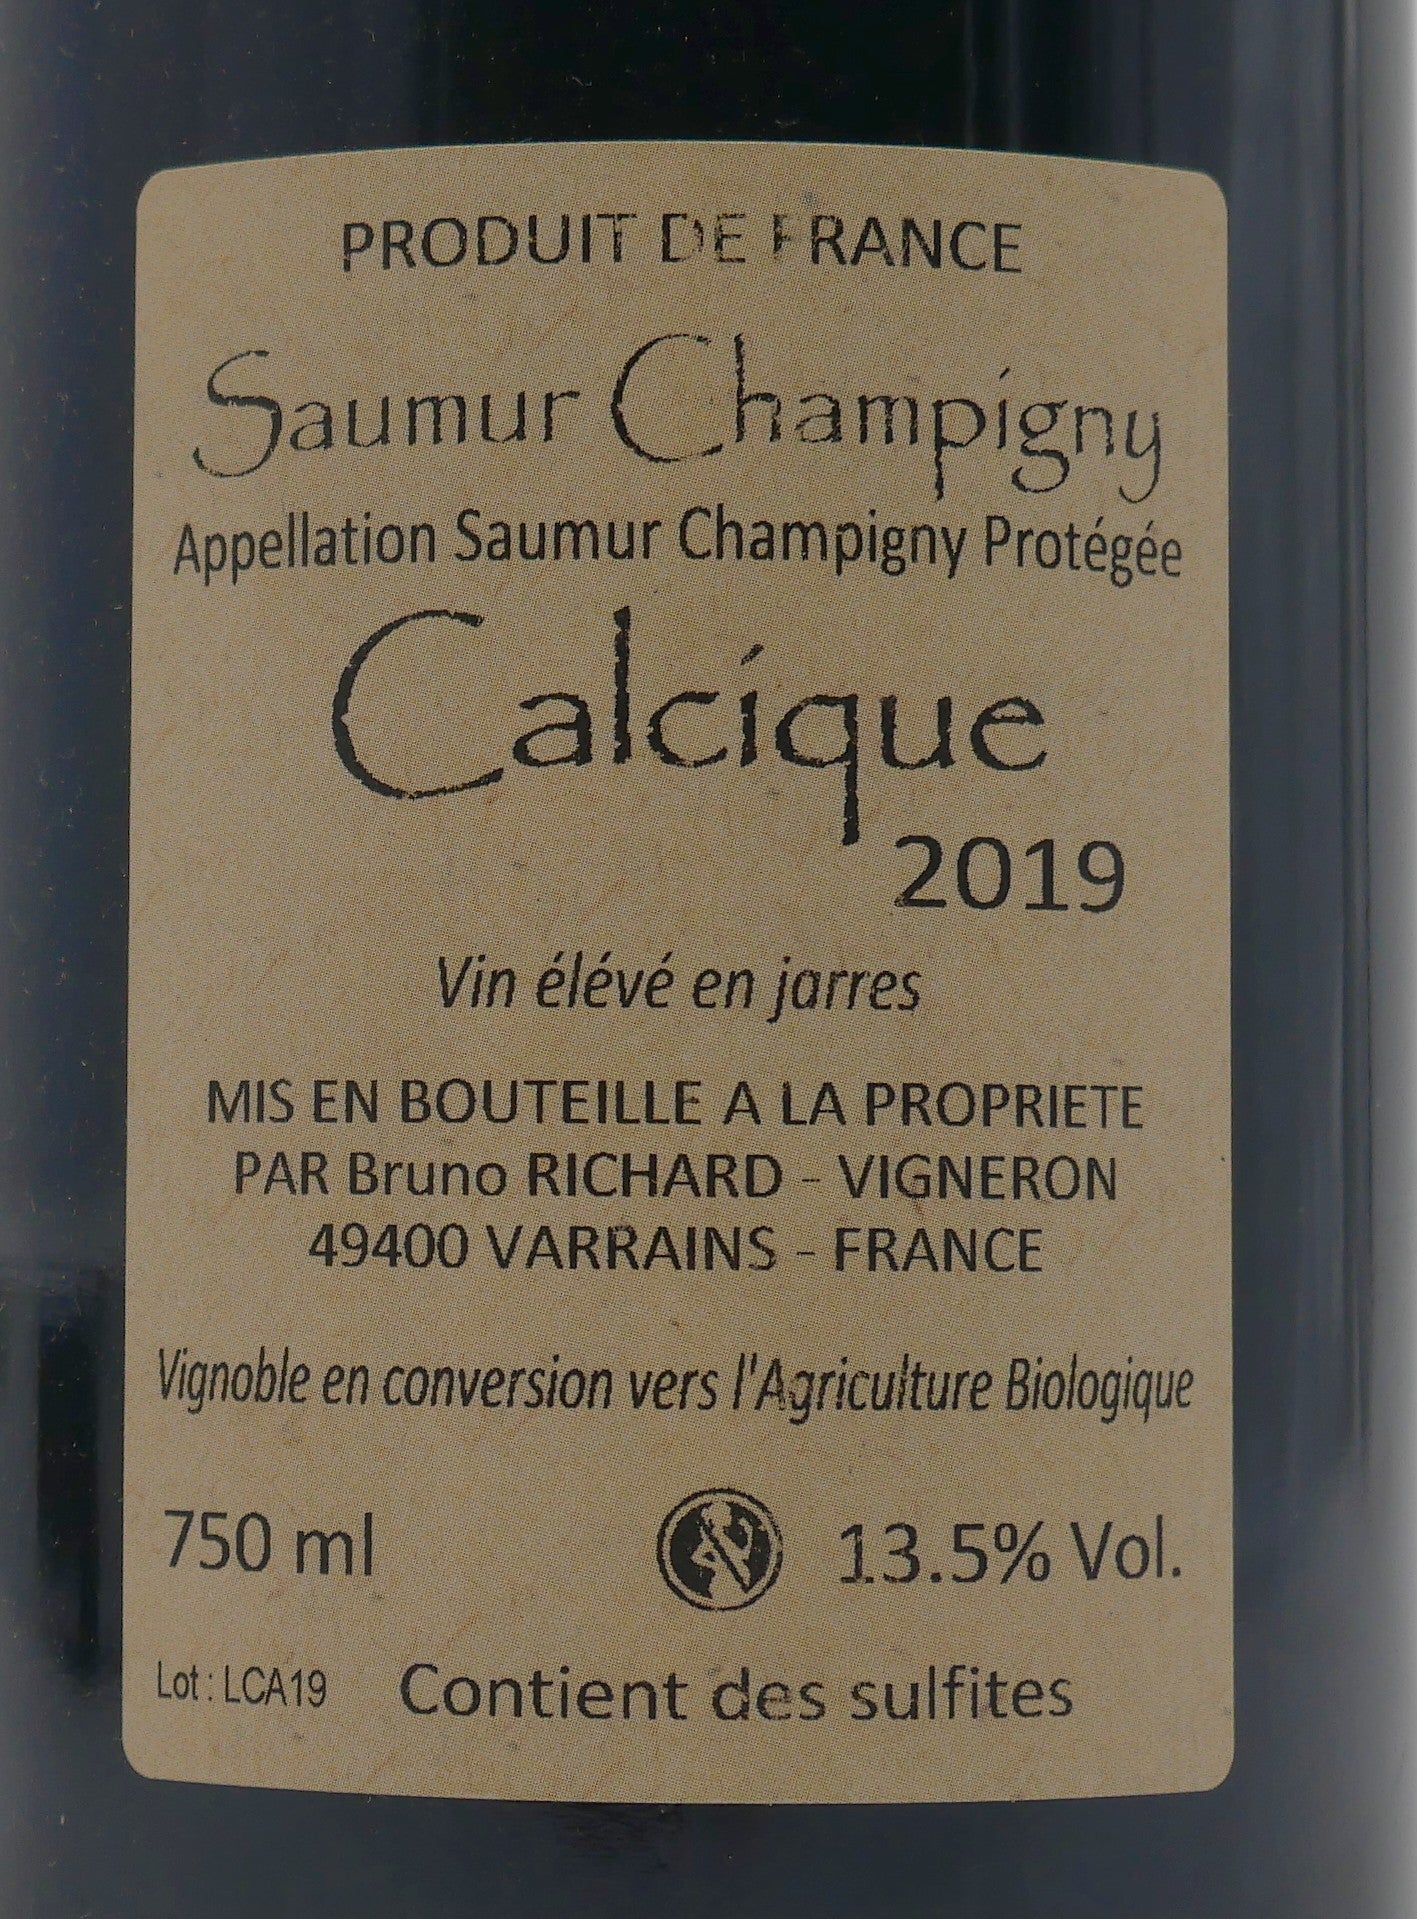 Saumur-Champigny Calcique 2019